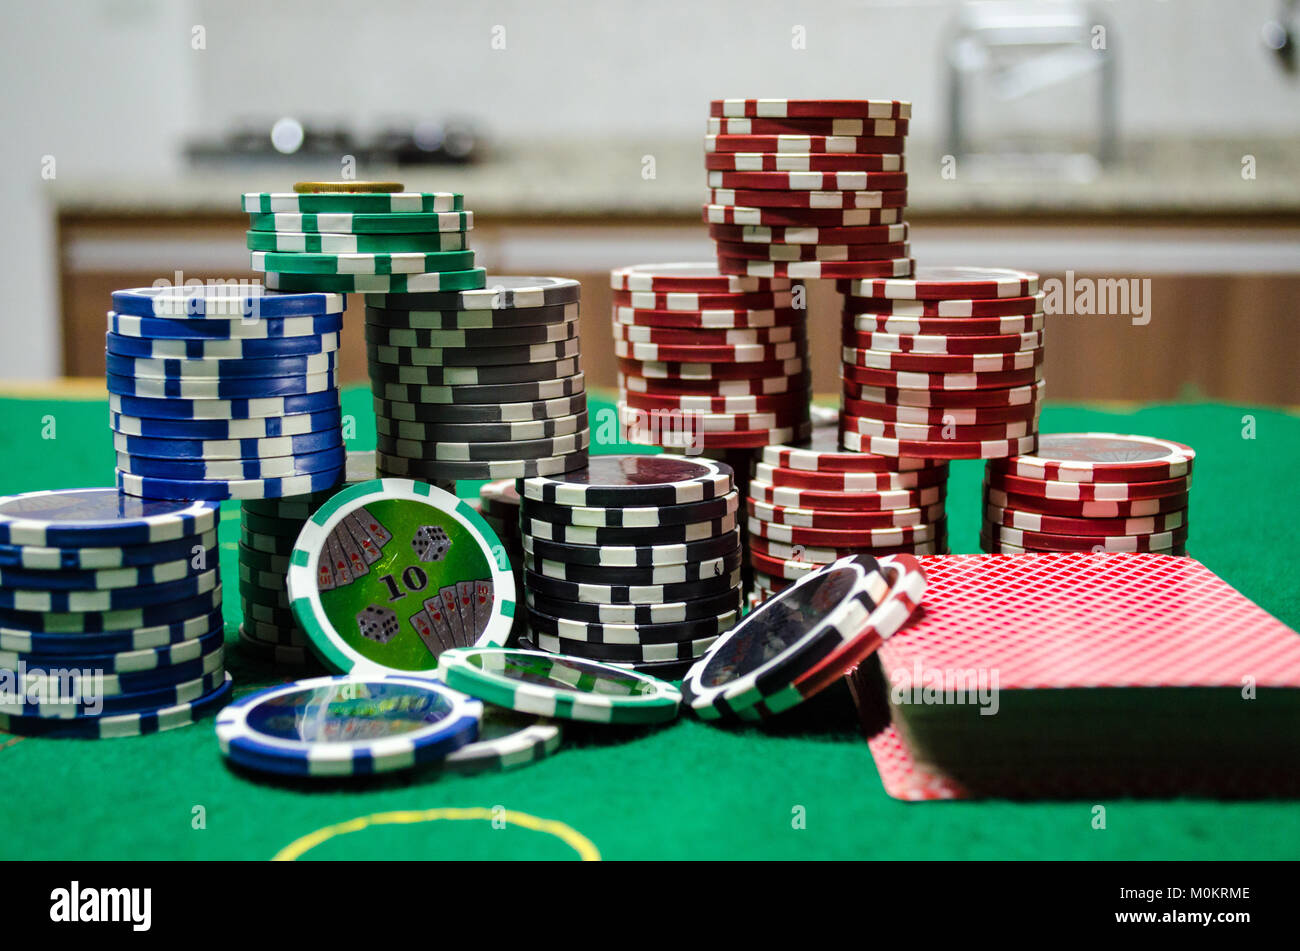 Jetons de poker - jetons de poker avec des cartes à jouer sur une table verte dans un close up Banque D'Images